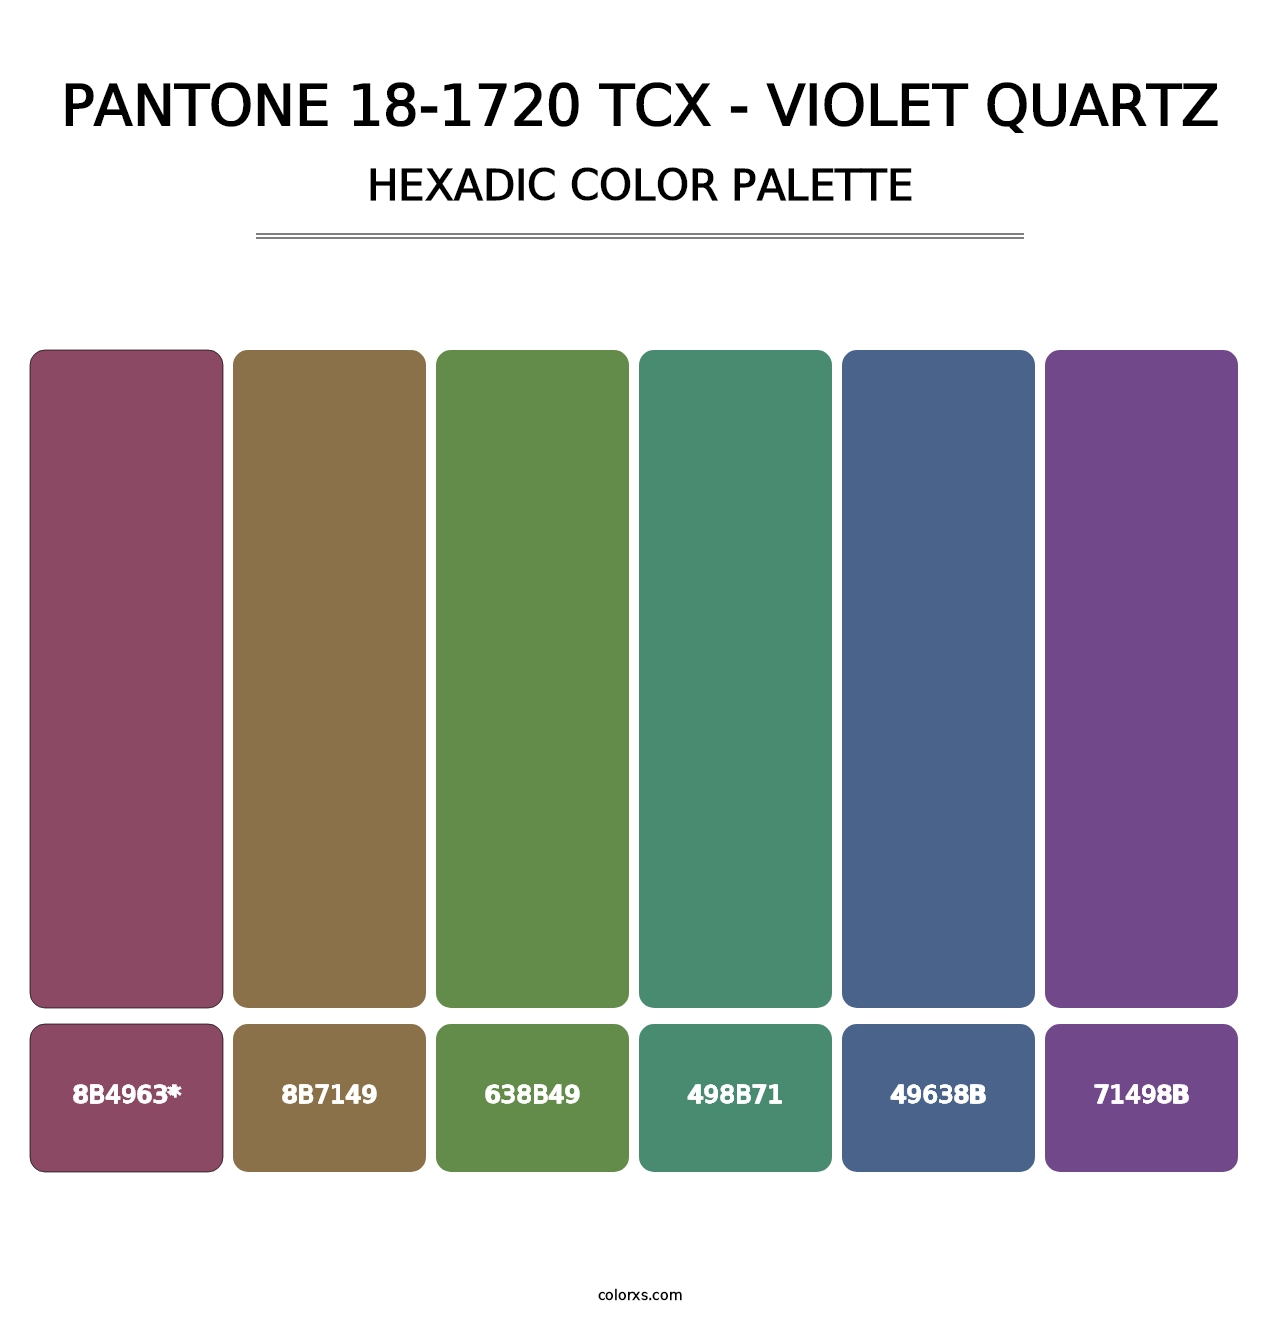 PANTONE 18-1720 TCX - Violet Quartz - Hexadic Color Palette